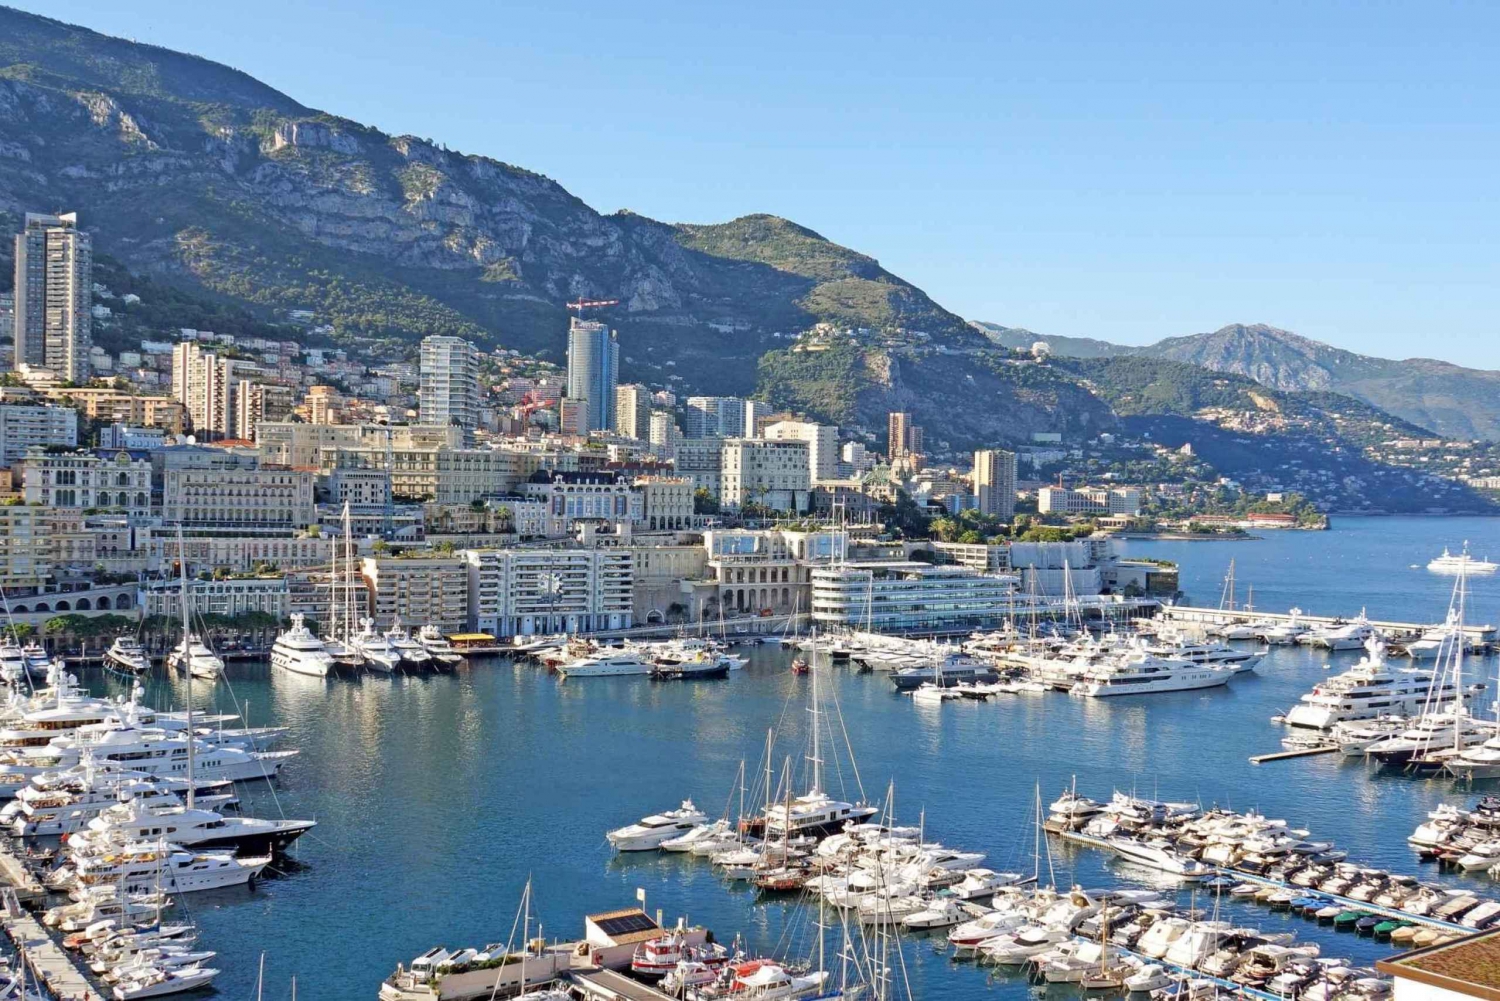 Kokopäiväretki Nizzaan Cannesiin Antibesiin ja Saint Tropeziin